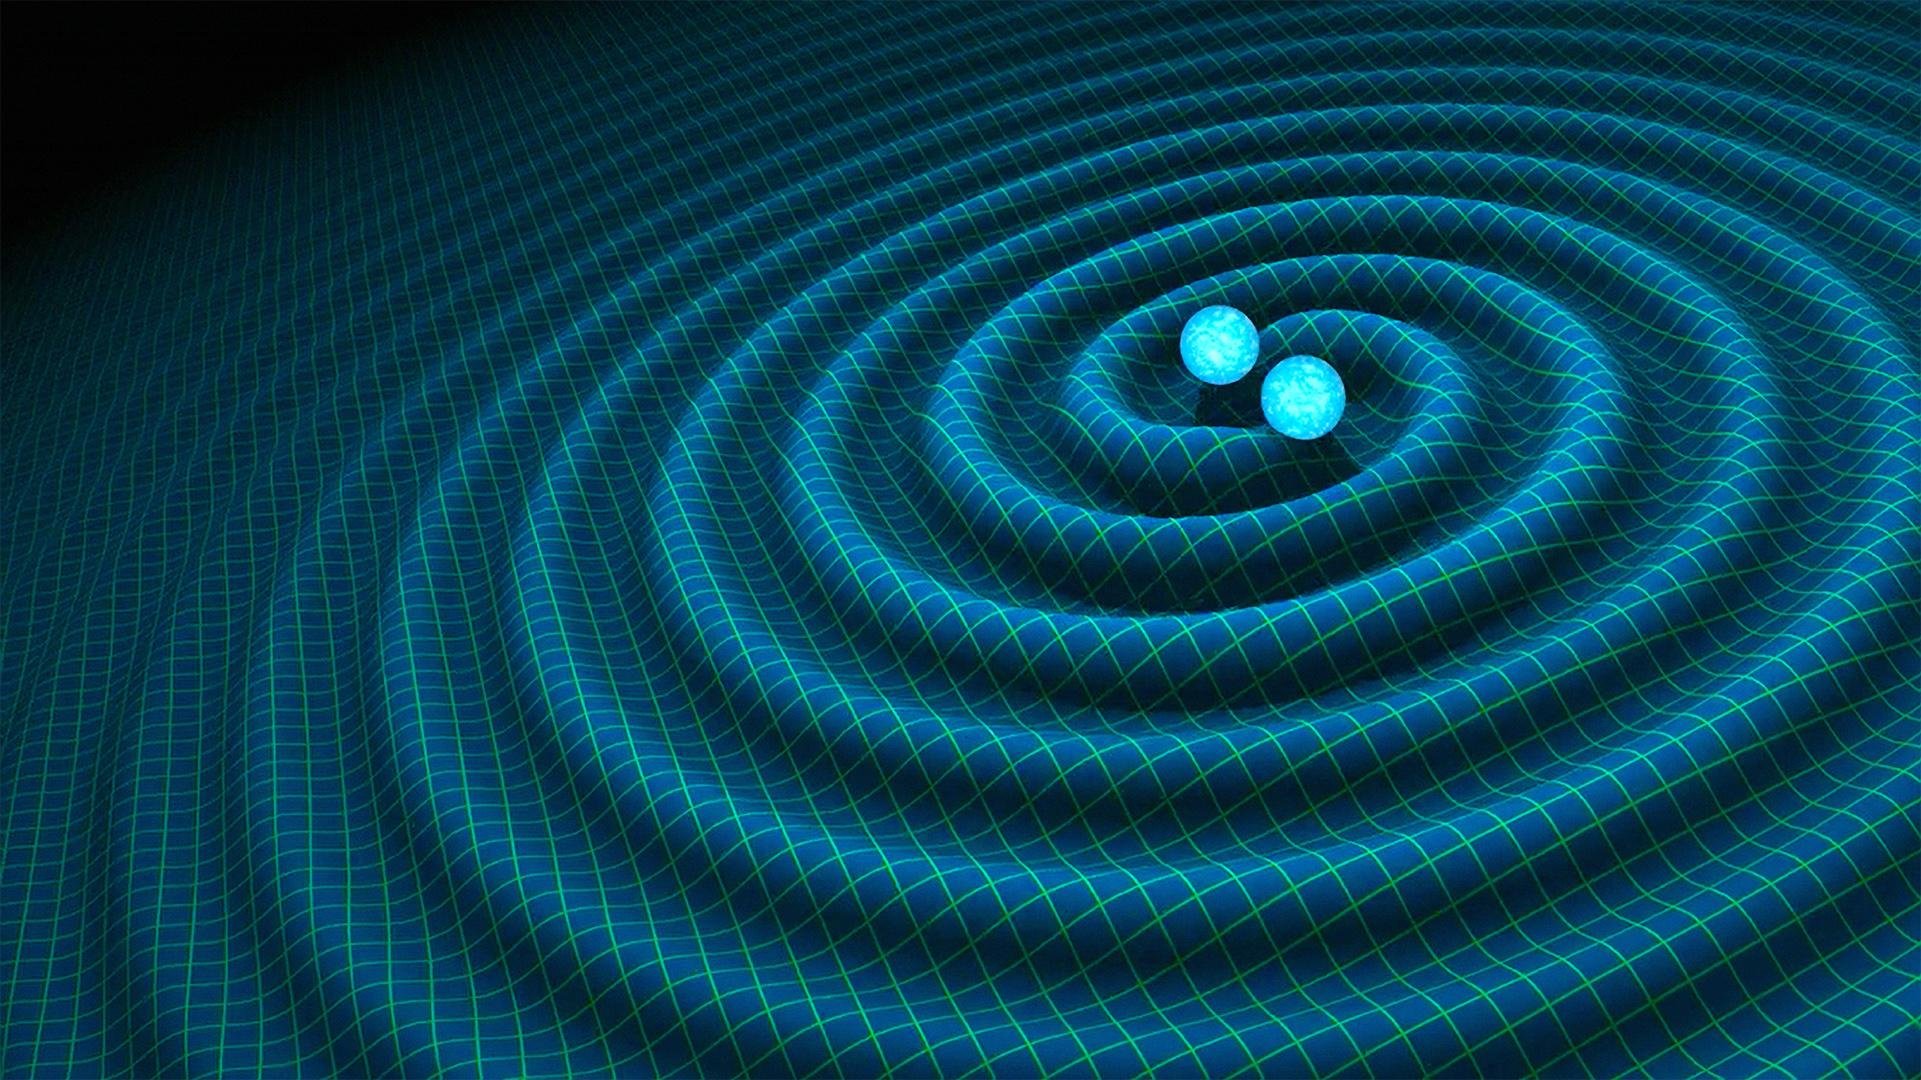 Representação artística da produção de ondas gravitacionais por duas estrelas binárias.